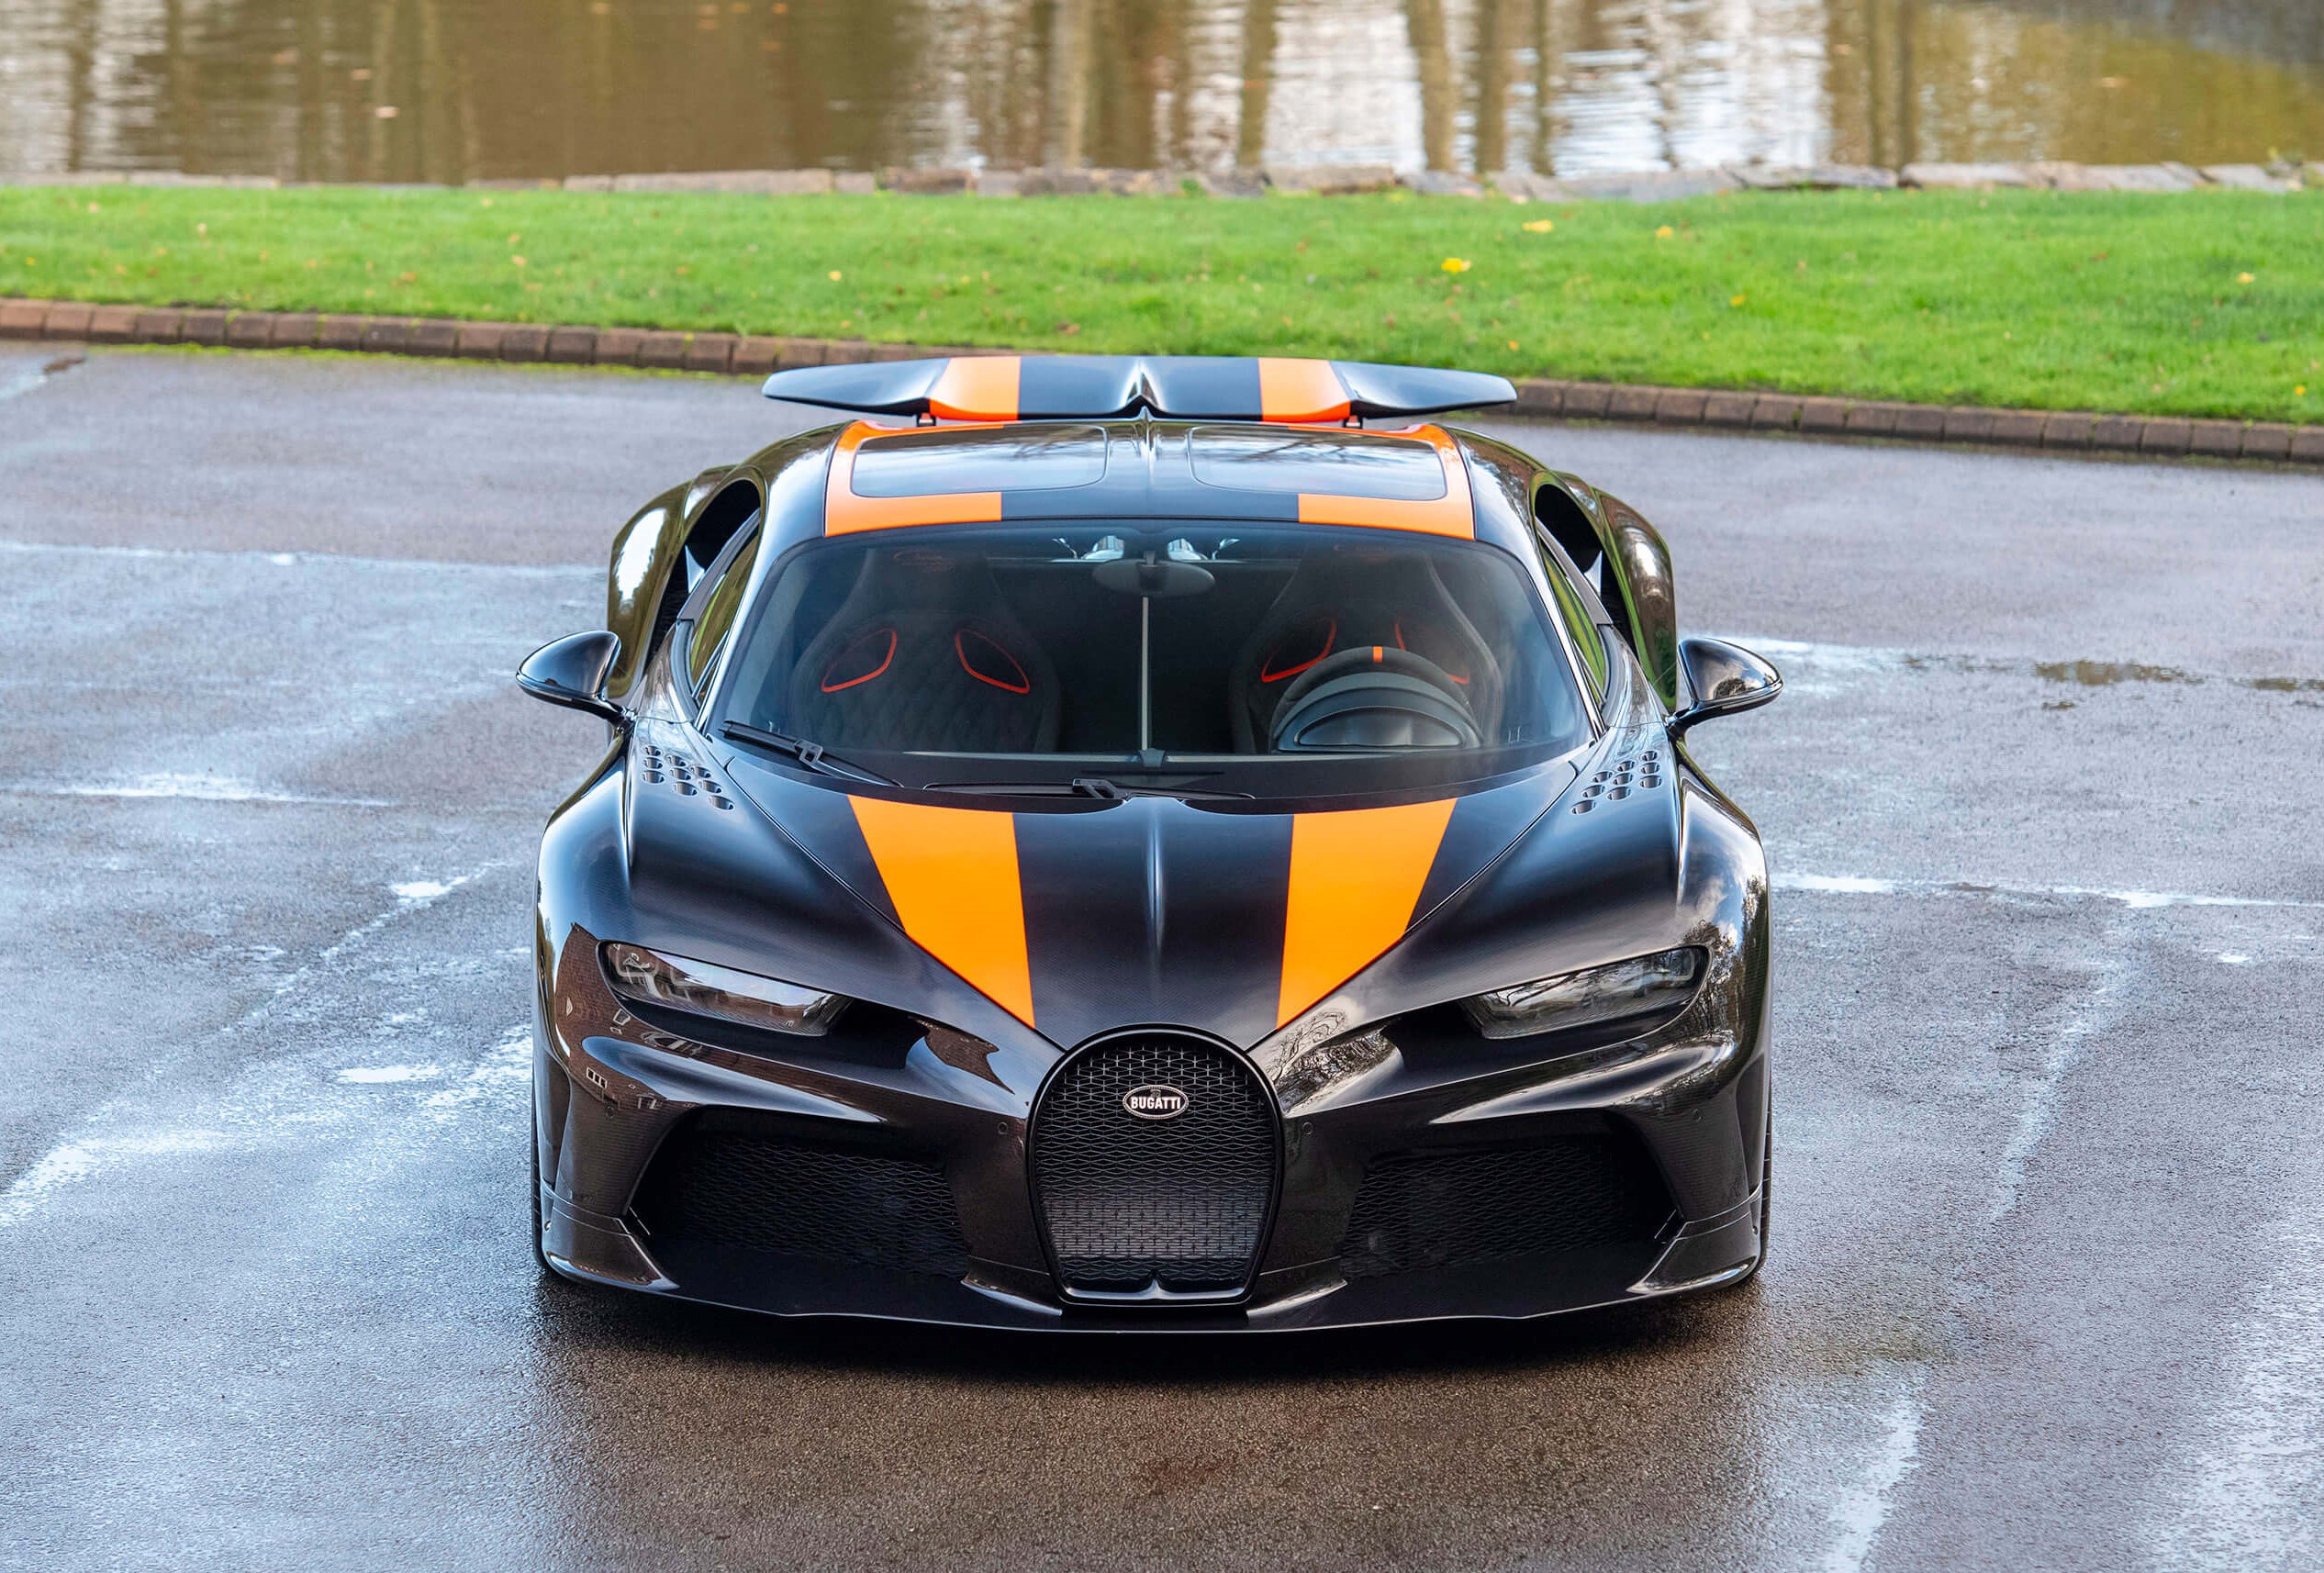 Car Of The Day: 2021 Bugatti Chiron Super Sport 300+